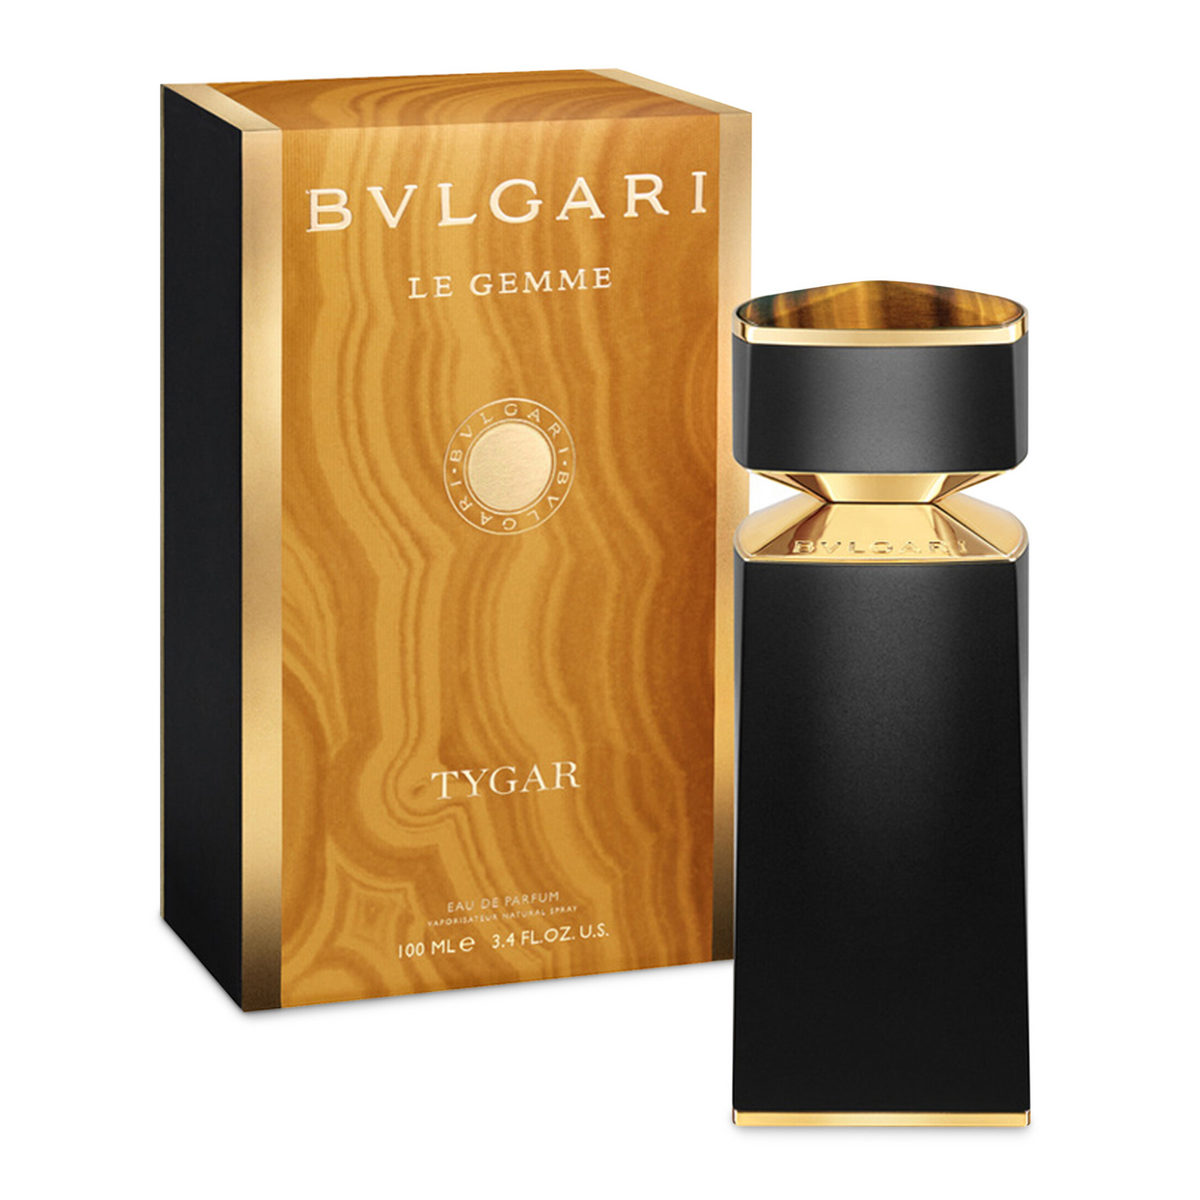 Bvlgari Le Gemme Tygar eau de parfum for men